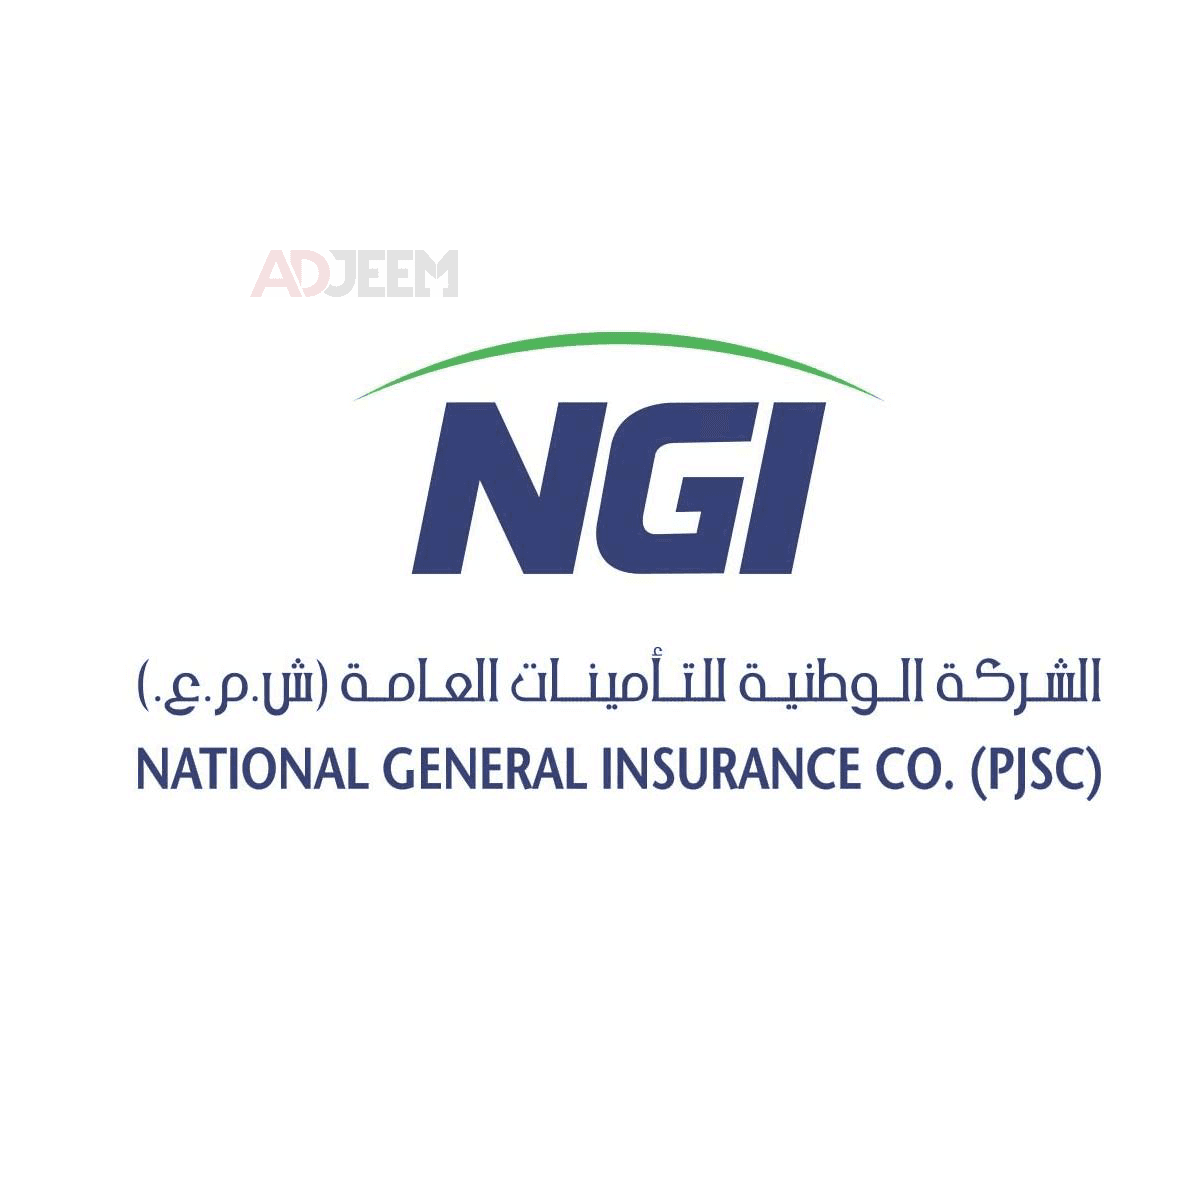 Personal Property Insurance Provider in Dubai